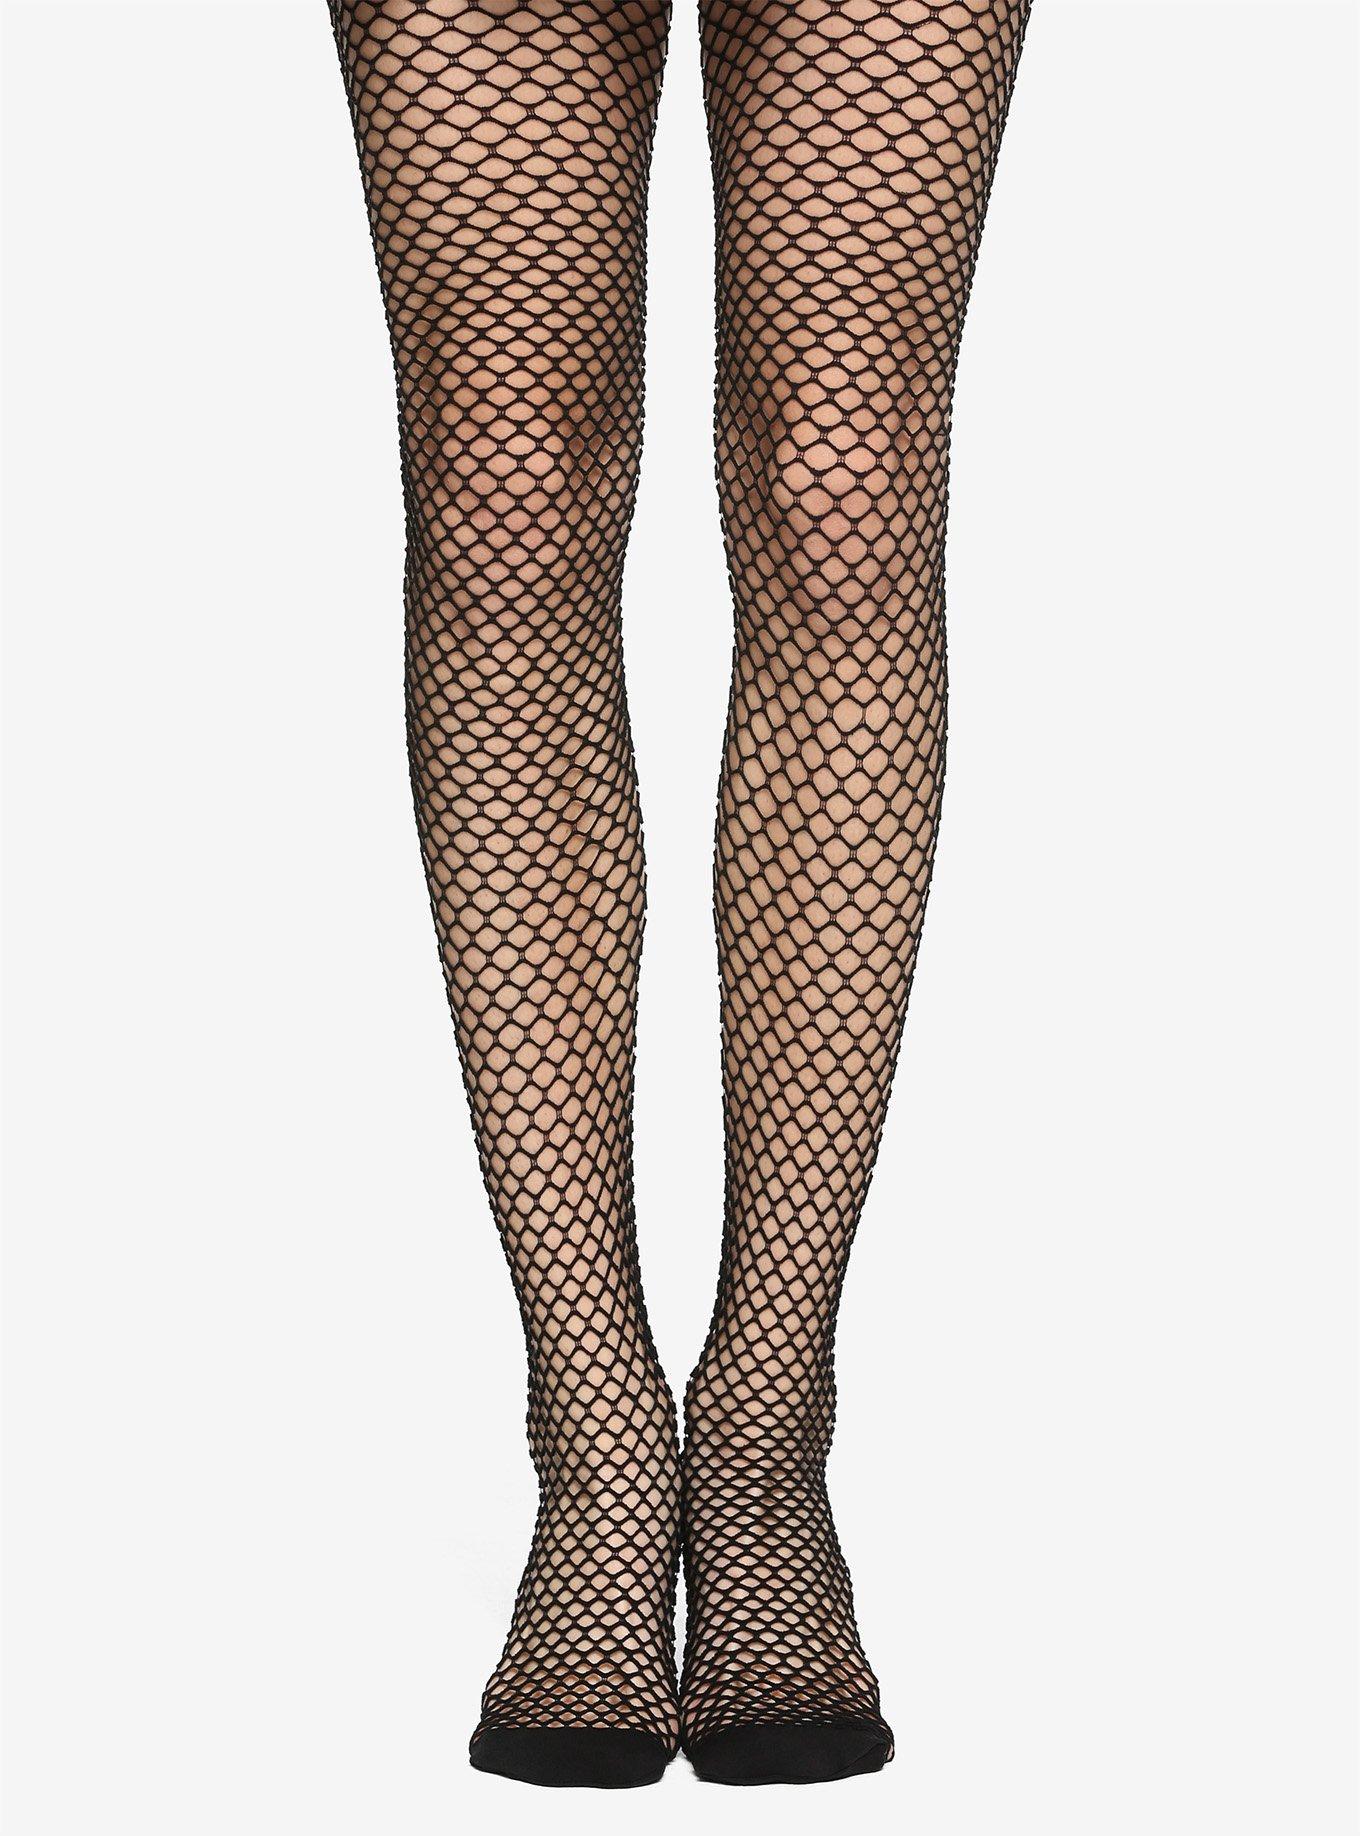 New American Girl Socks Lot~Ankle~White Long~Black Fishnet Stockings~Addy~Kit